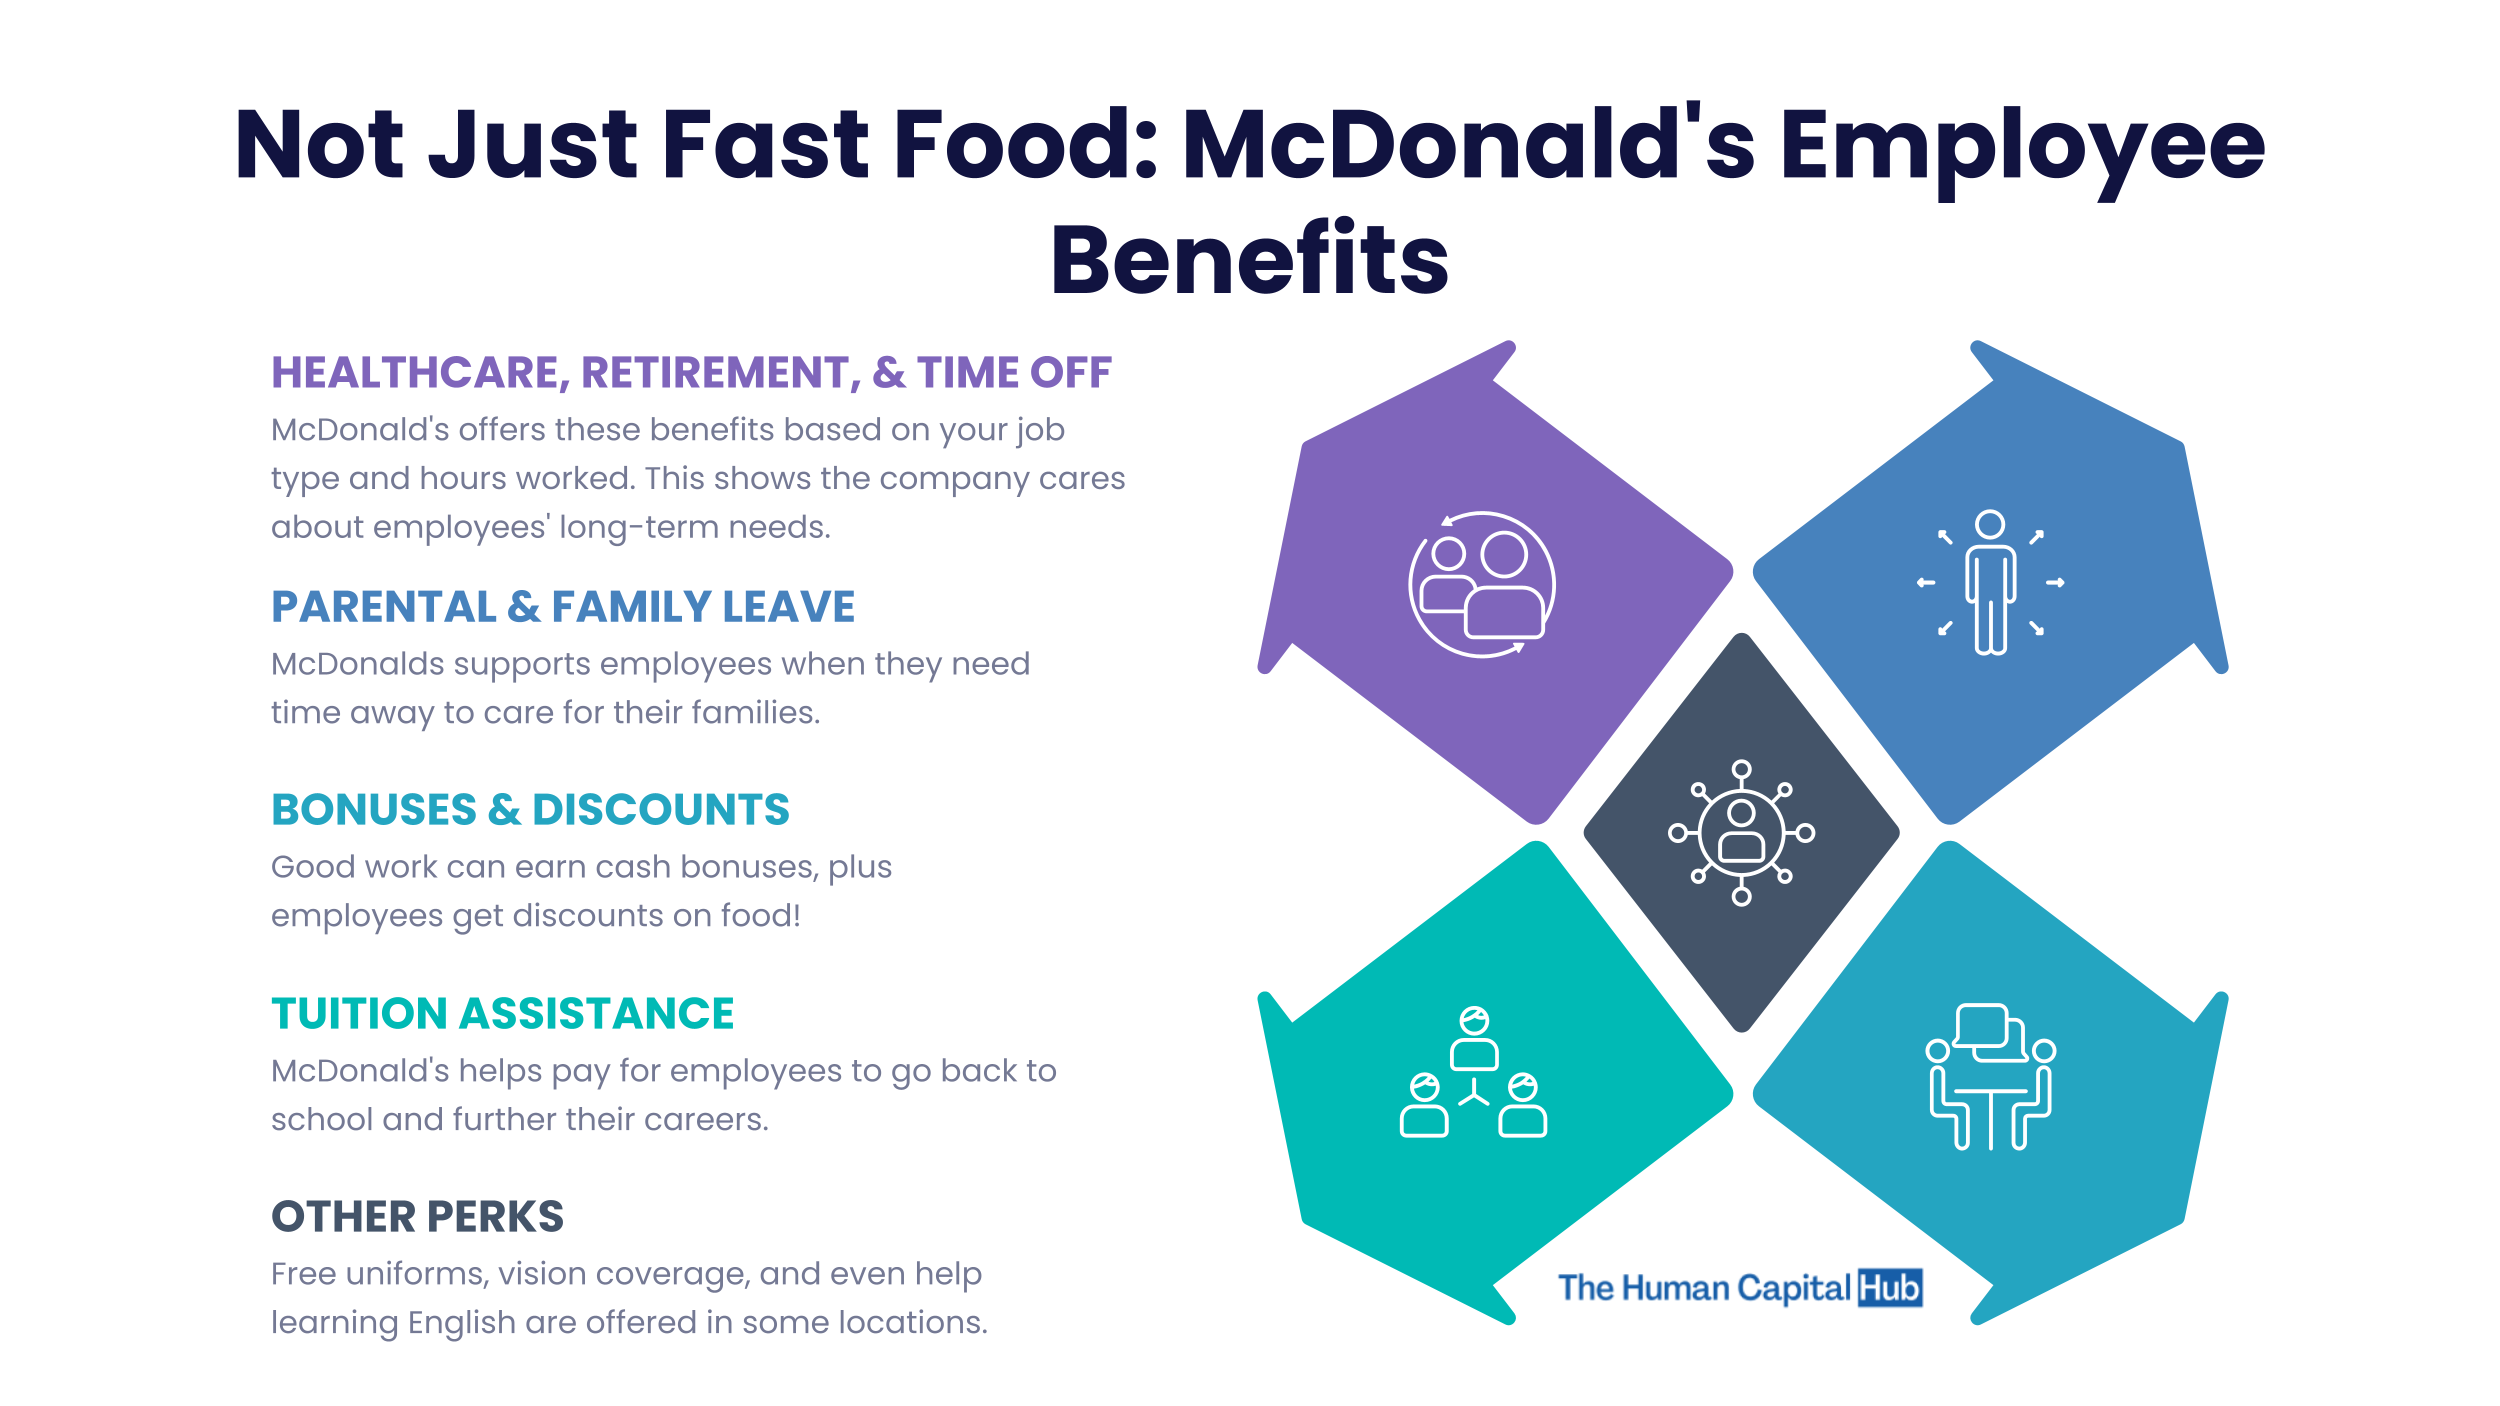 McDonald's Employee Benefits